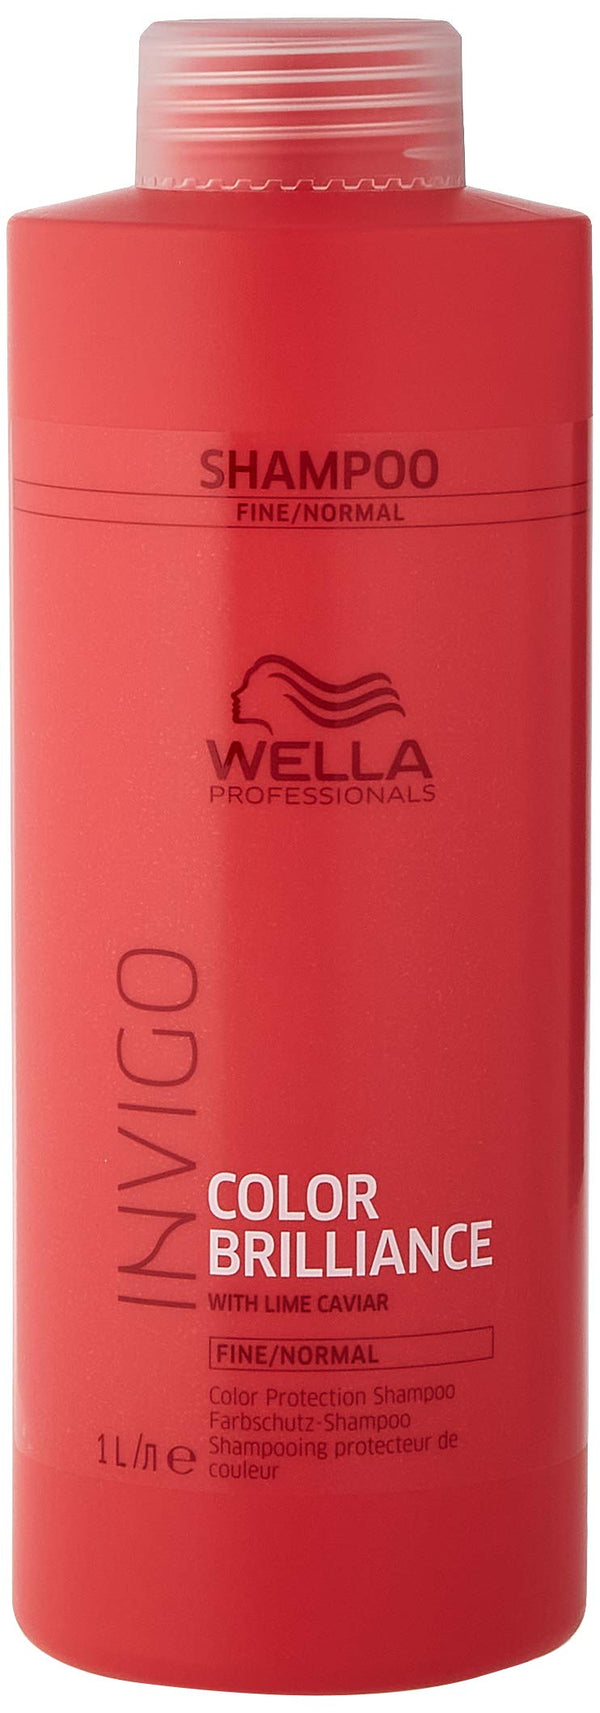 Wella Professionals Invigo Color Brilliance Shampoo 1000ml - For Fine/Normal Hair